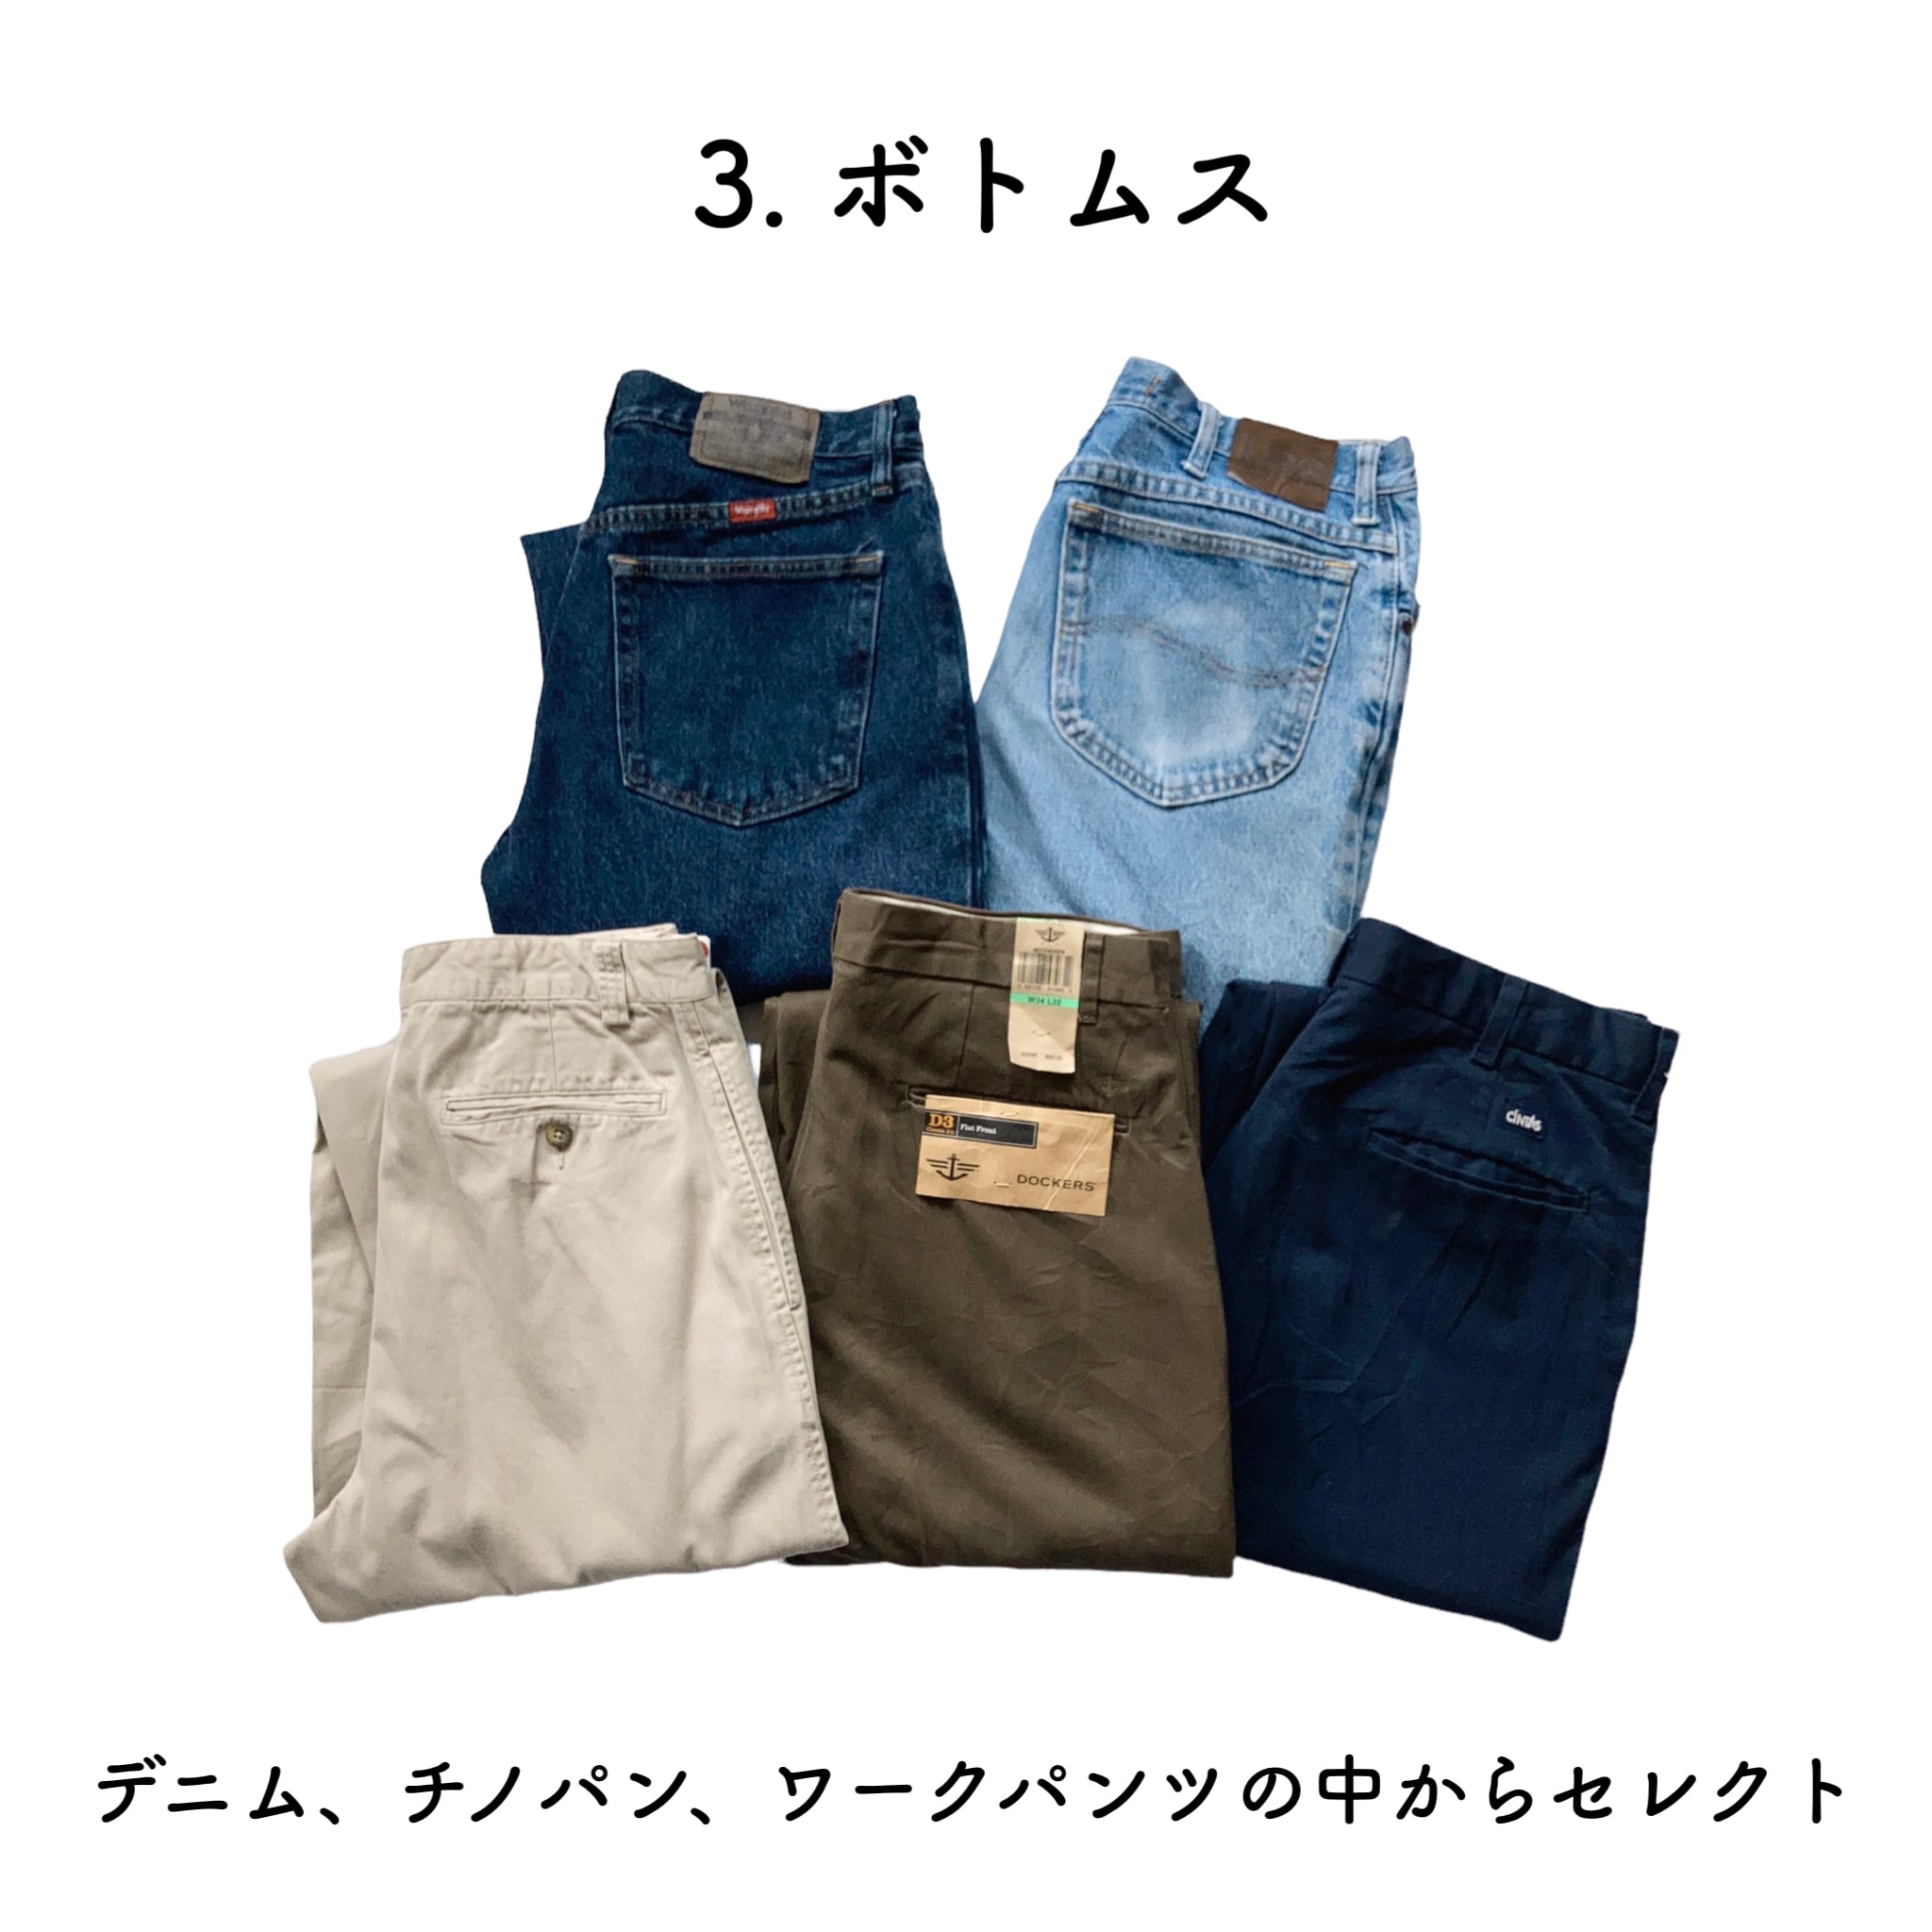 【夏Ver.】ネクタイスタイルCOMBO‼︎ 半袖シャツ × ネクタイ × ボトムスの3点セット